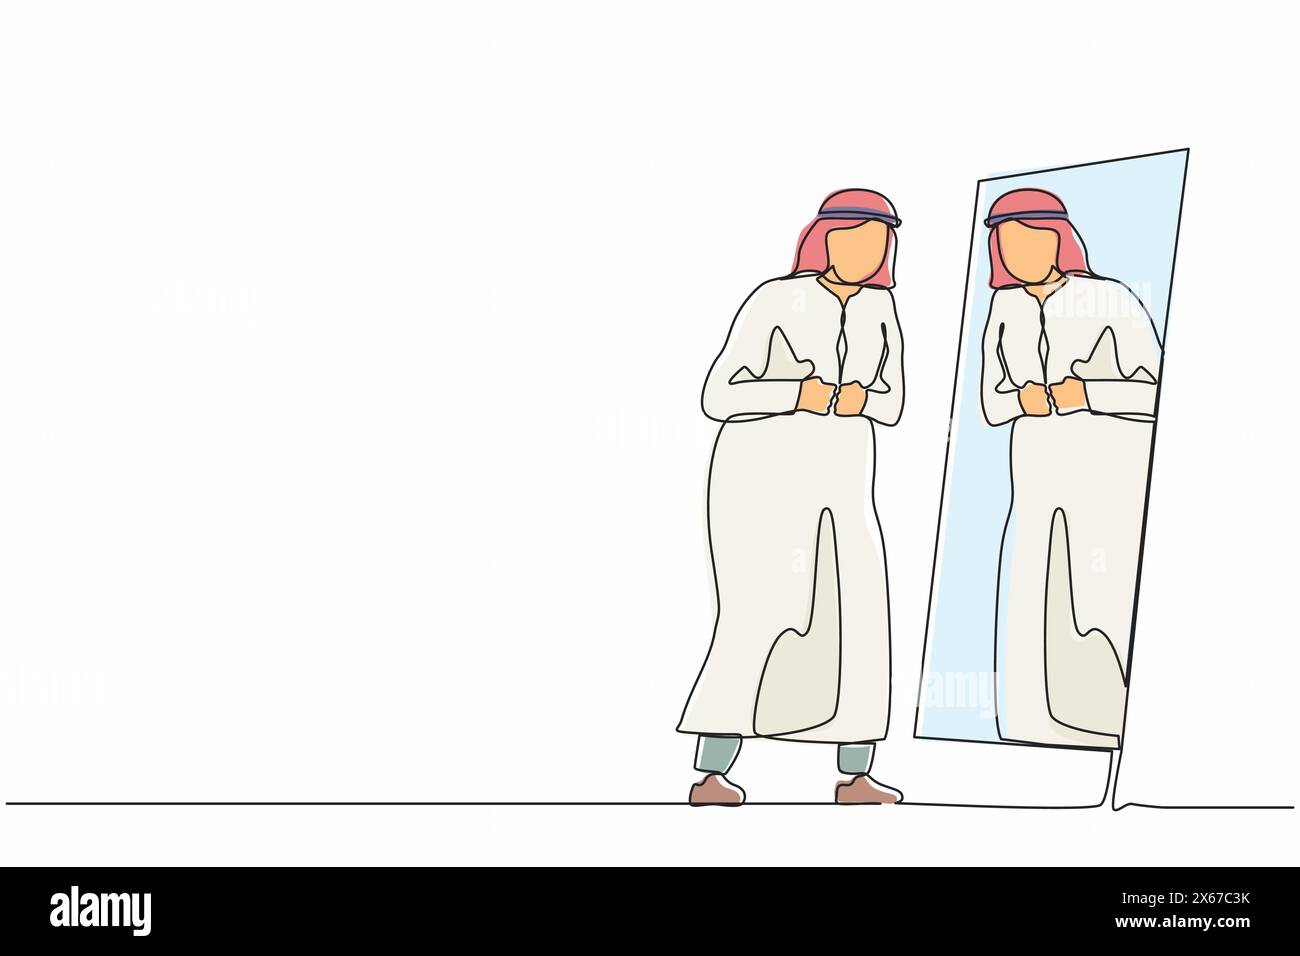 Eine durchgehende Linie zeichnet arabischer Geschäftsmann, der in den Spiegel schaut, sich selbst ansieht, seine arabische Kleidung in formeller Kleidung einstellt, ihn vorbereitet Stock Vektor